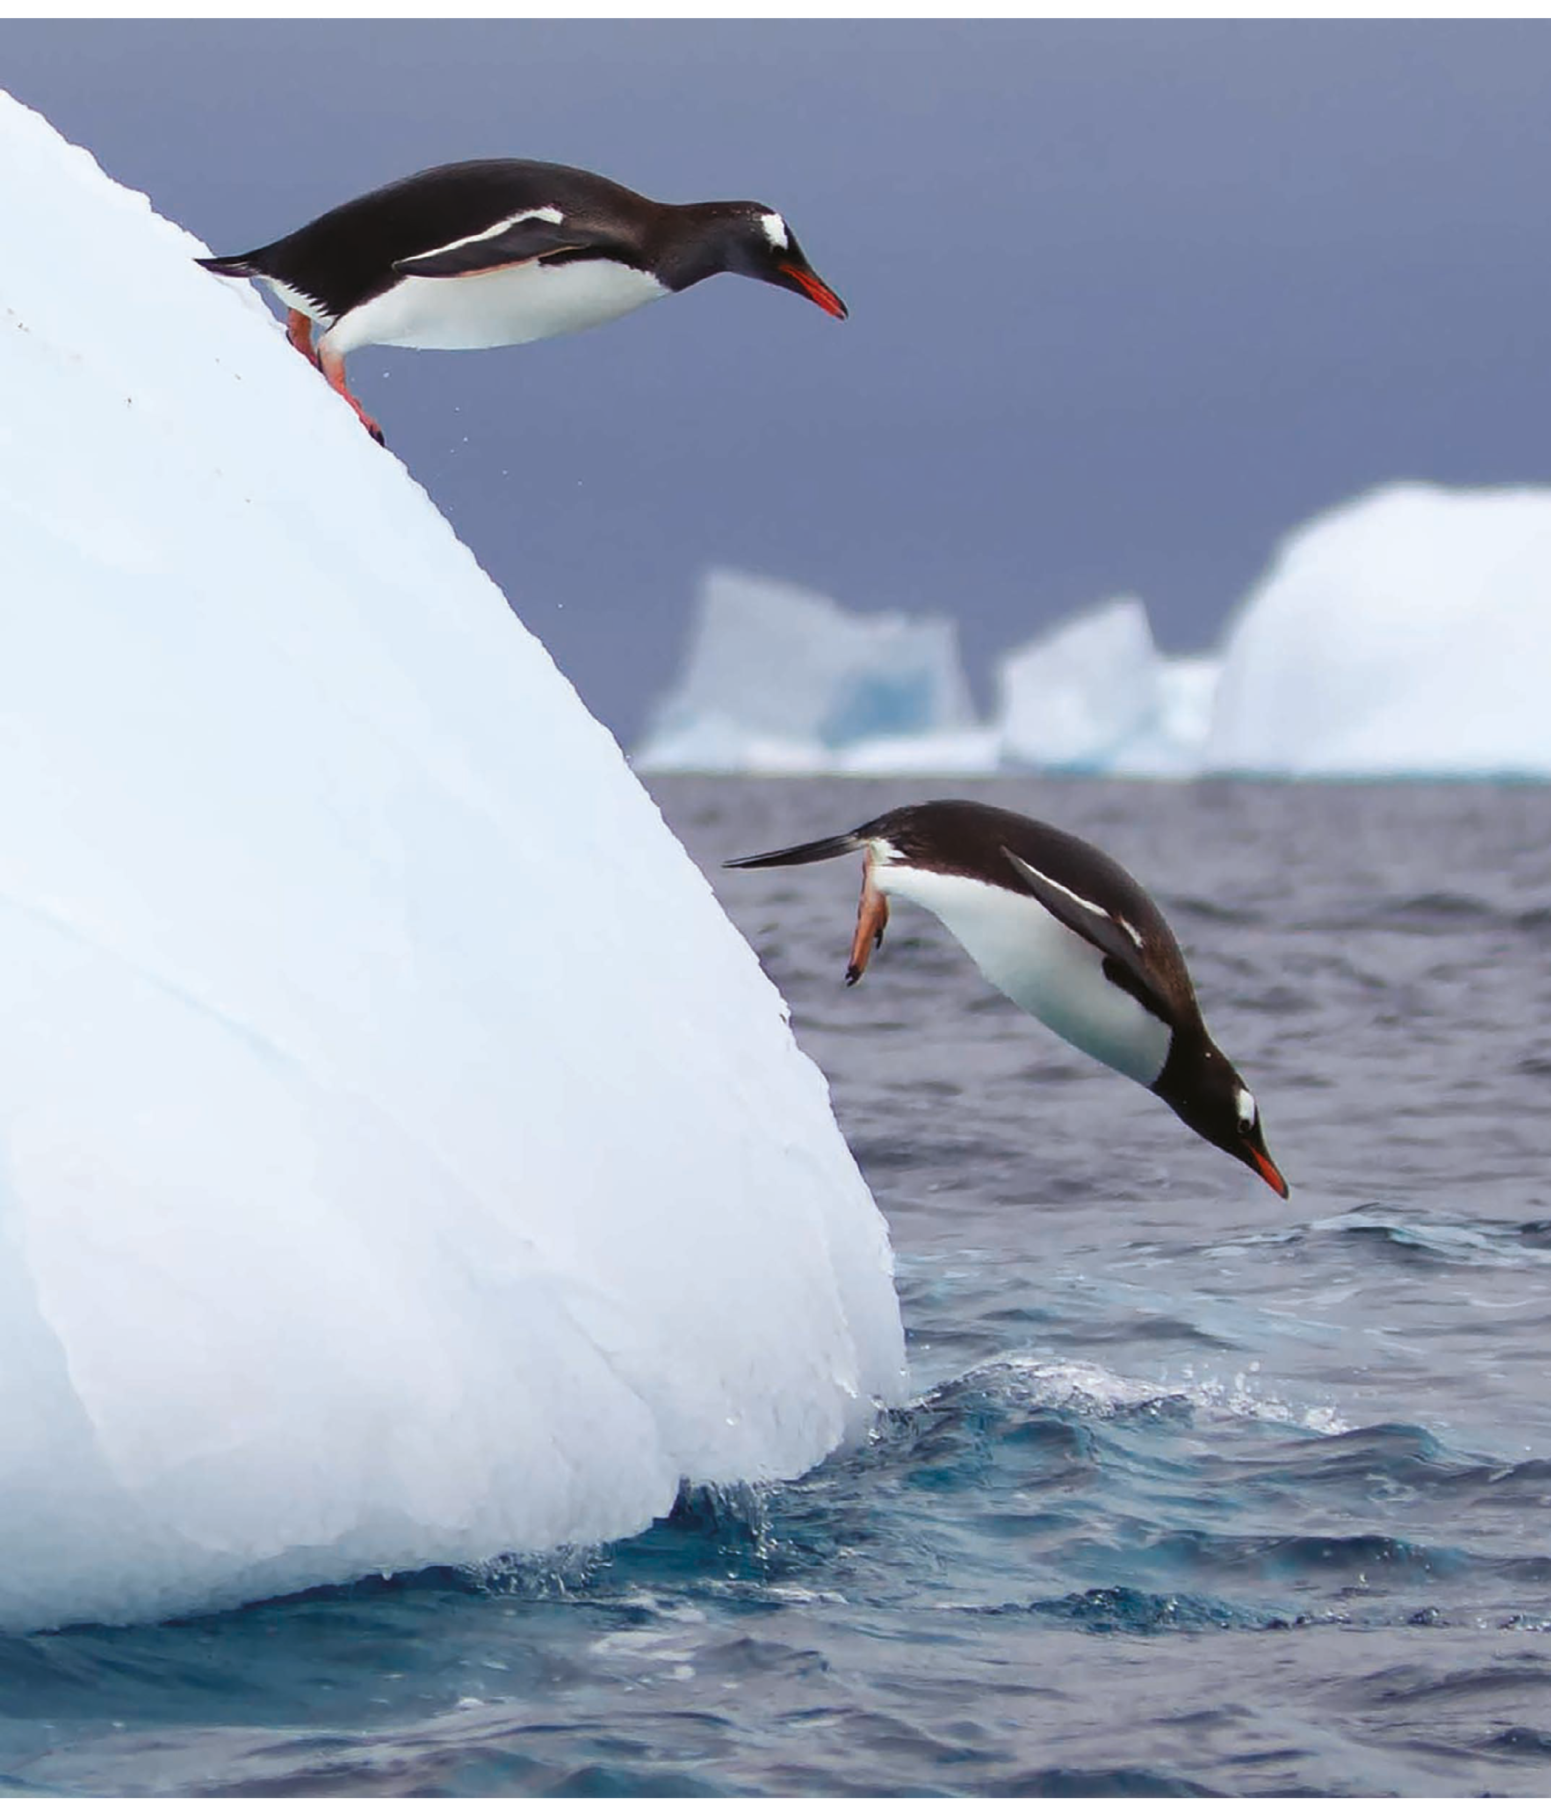 Fotografia. Um pinguim em cima de um bloco de gelo arredondado que está no mar. Na frente dele, um pinguim saltando em direção à água.